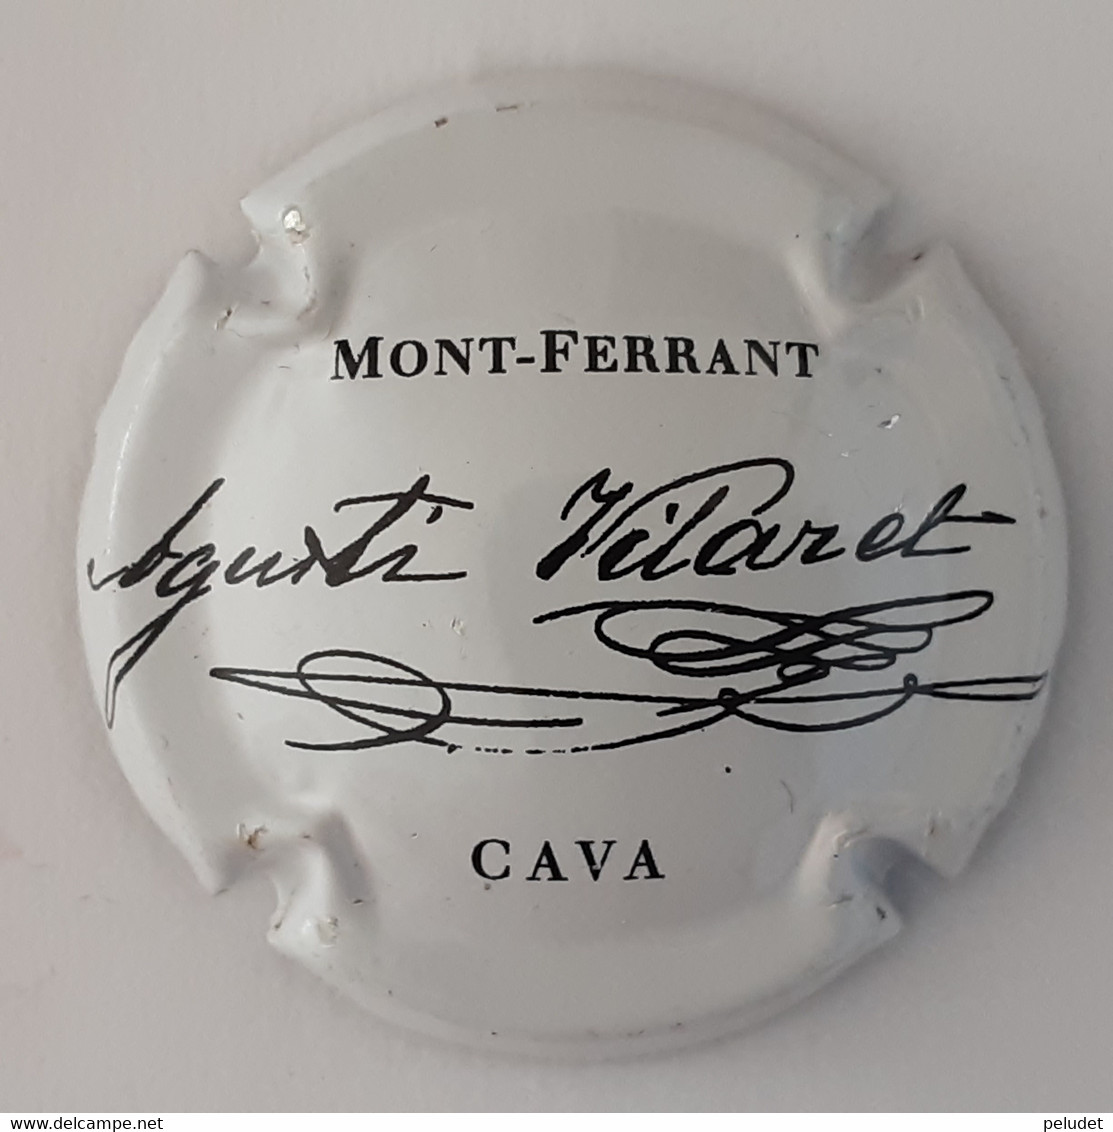 Mont Ferrant - Champagner & Sekt